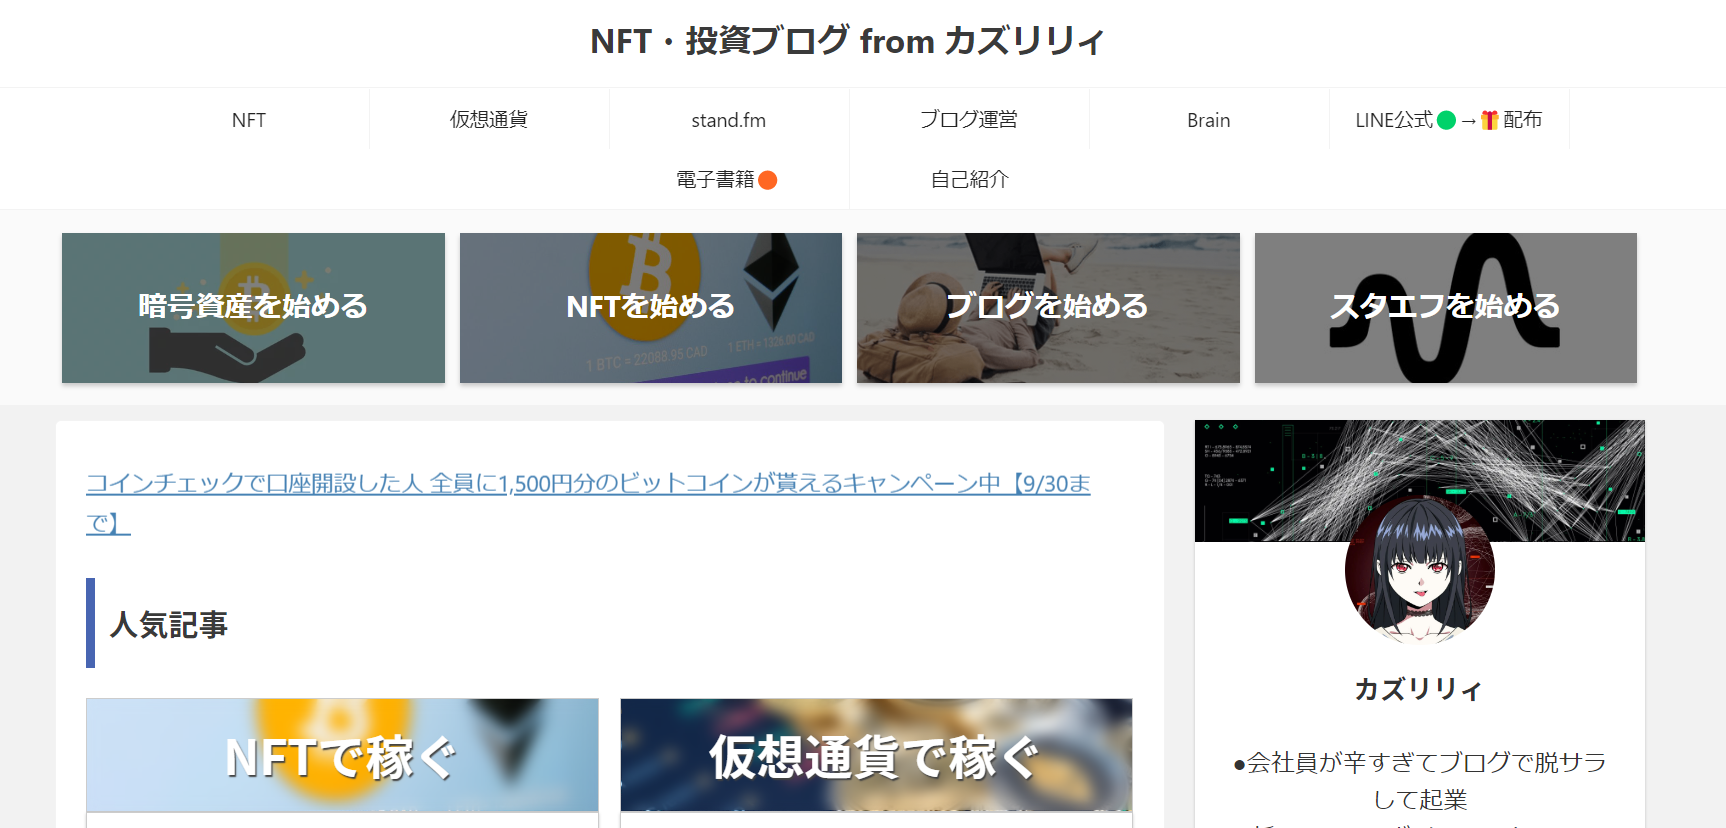 NFT・投資ブログ from カズリリティ